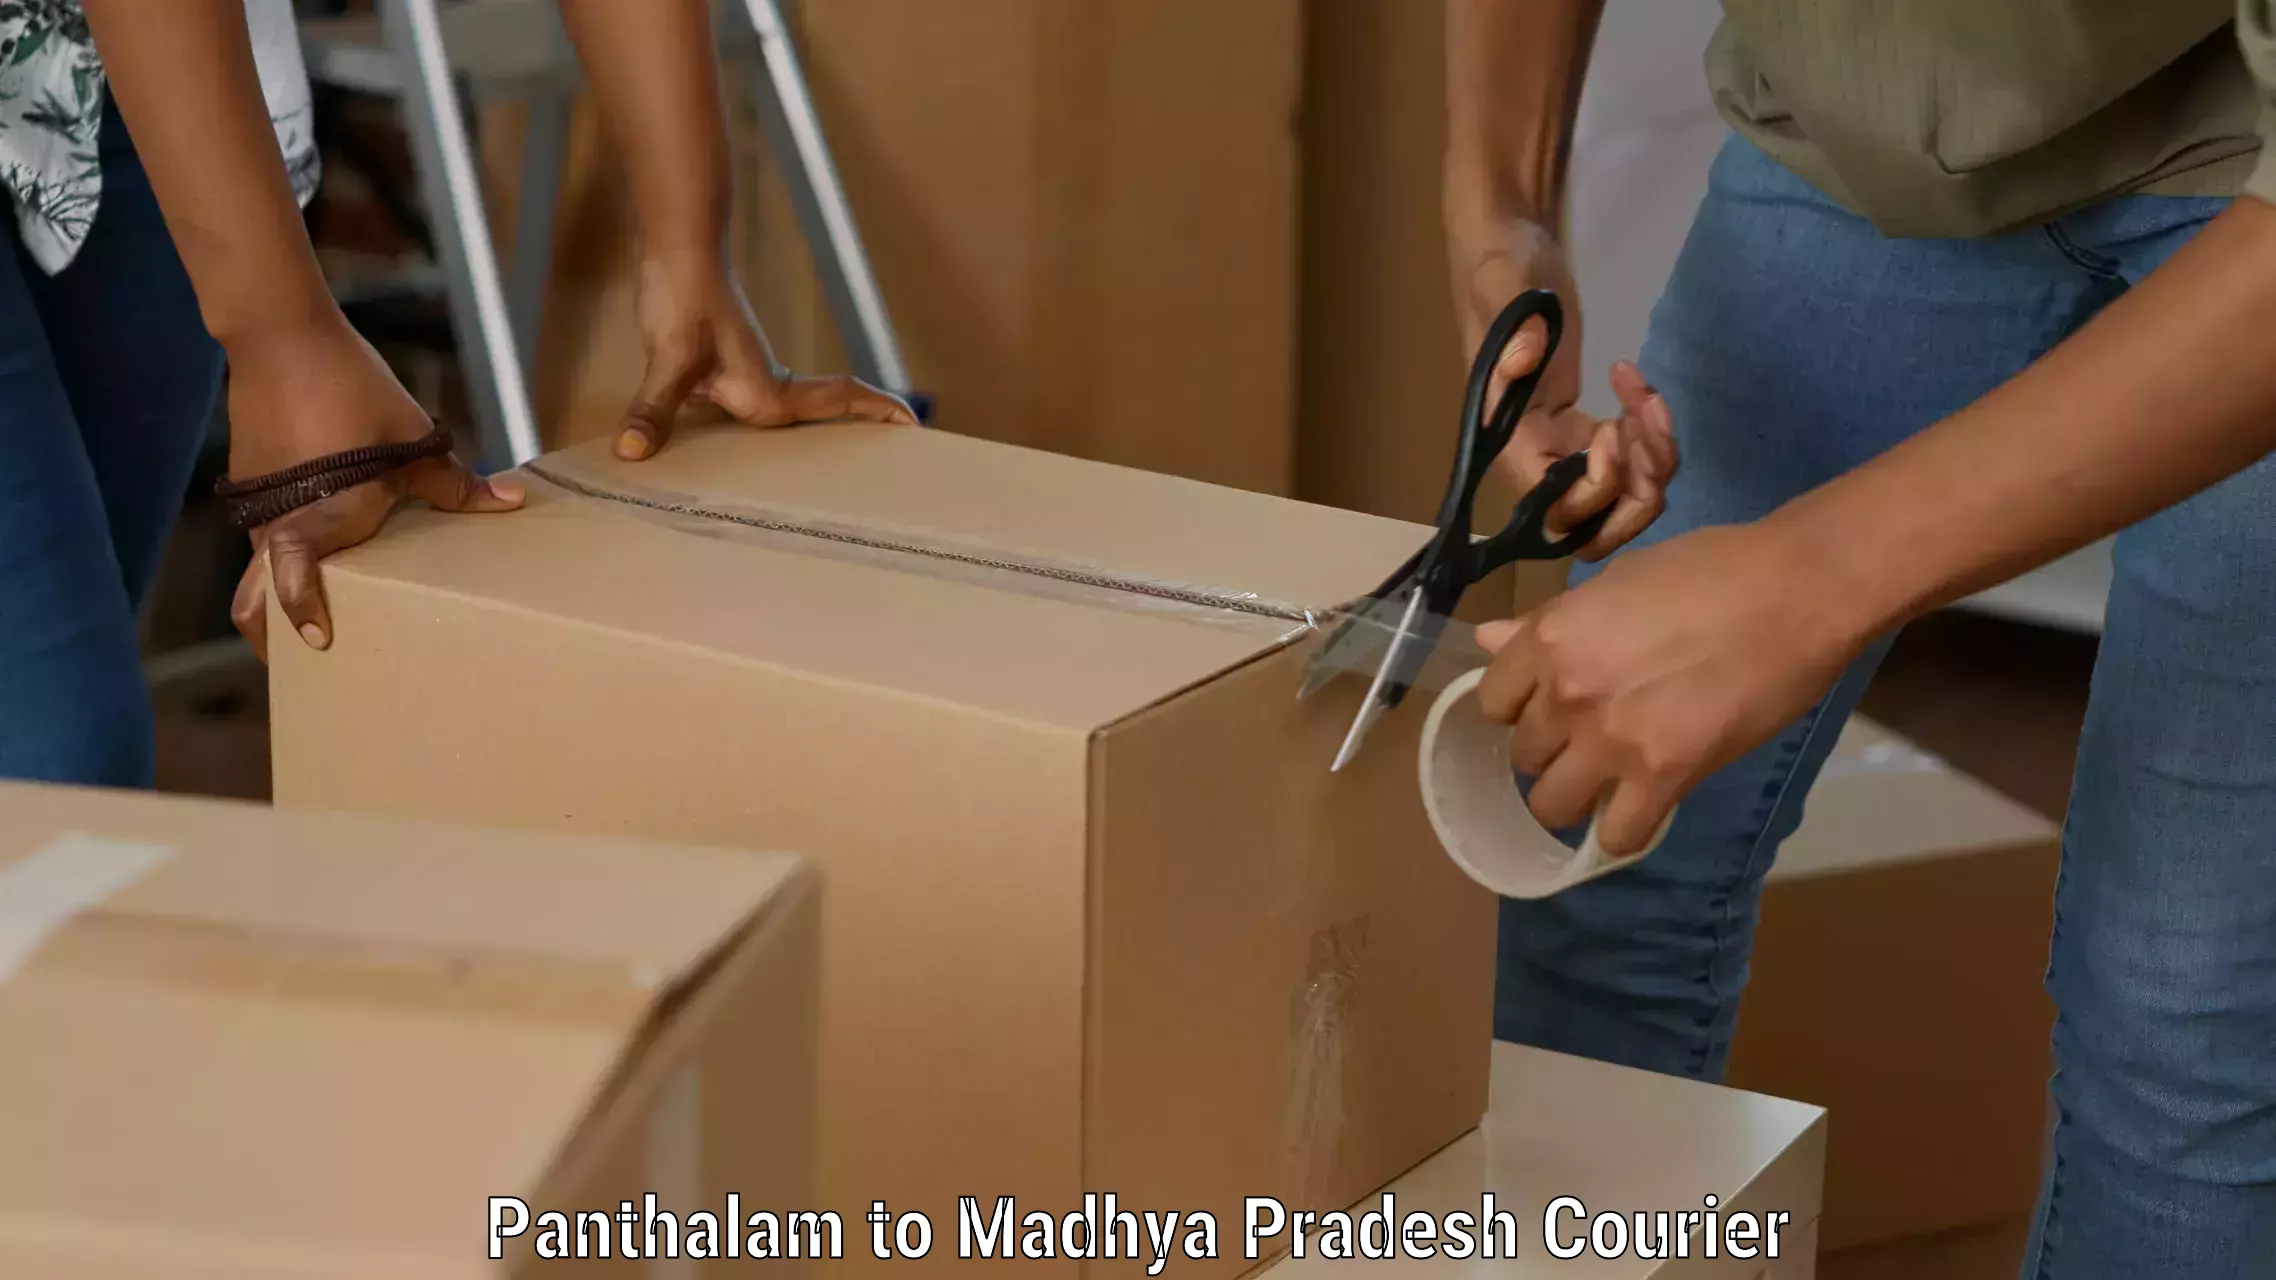 Global freight services Panthalam to Madhya Pradesh